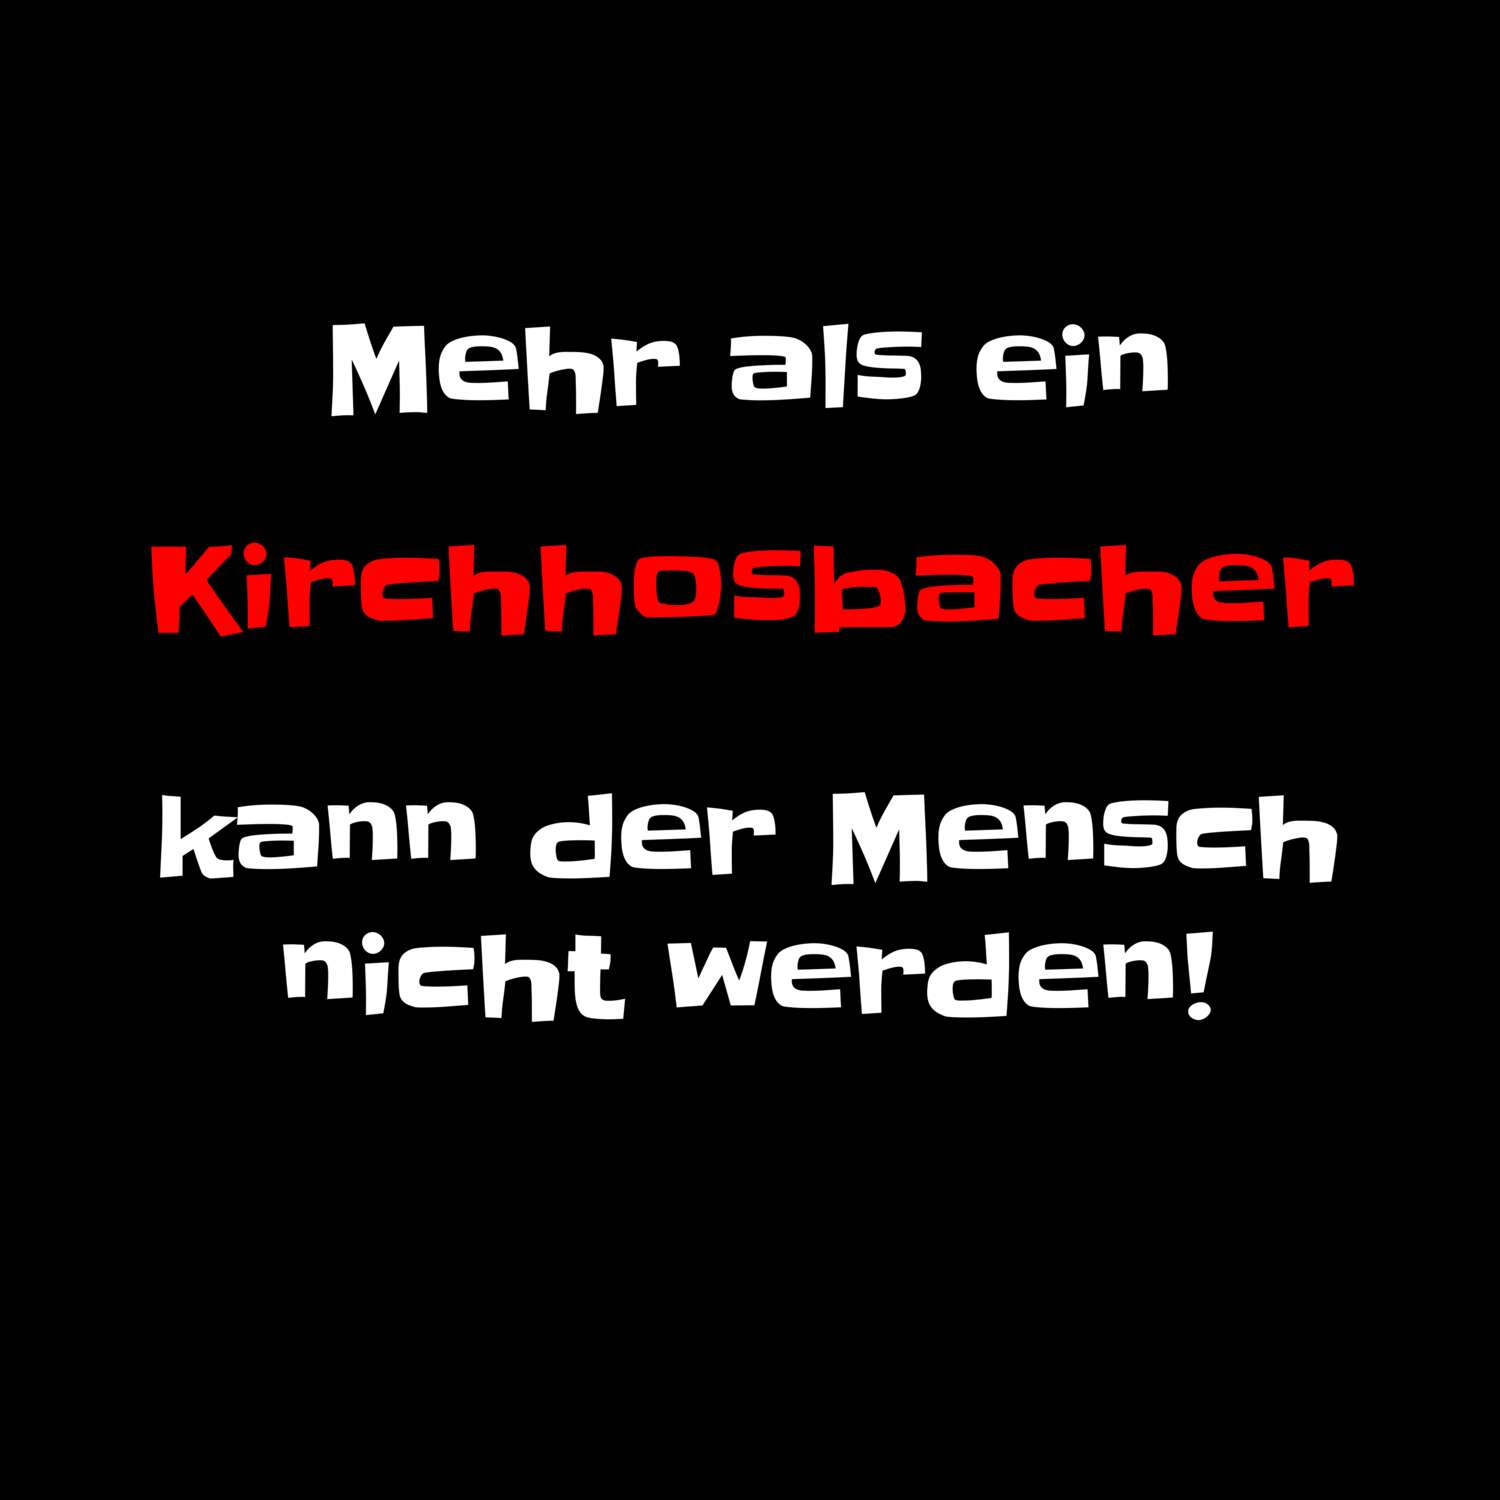 Kirchhosbach T-Shirt »Mehr als ein«